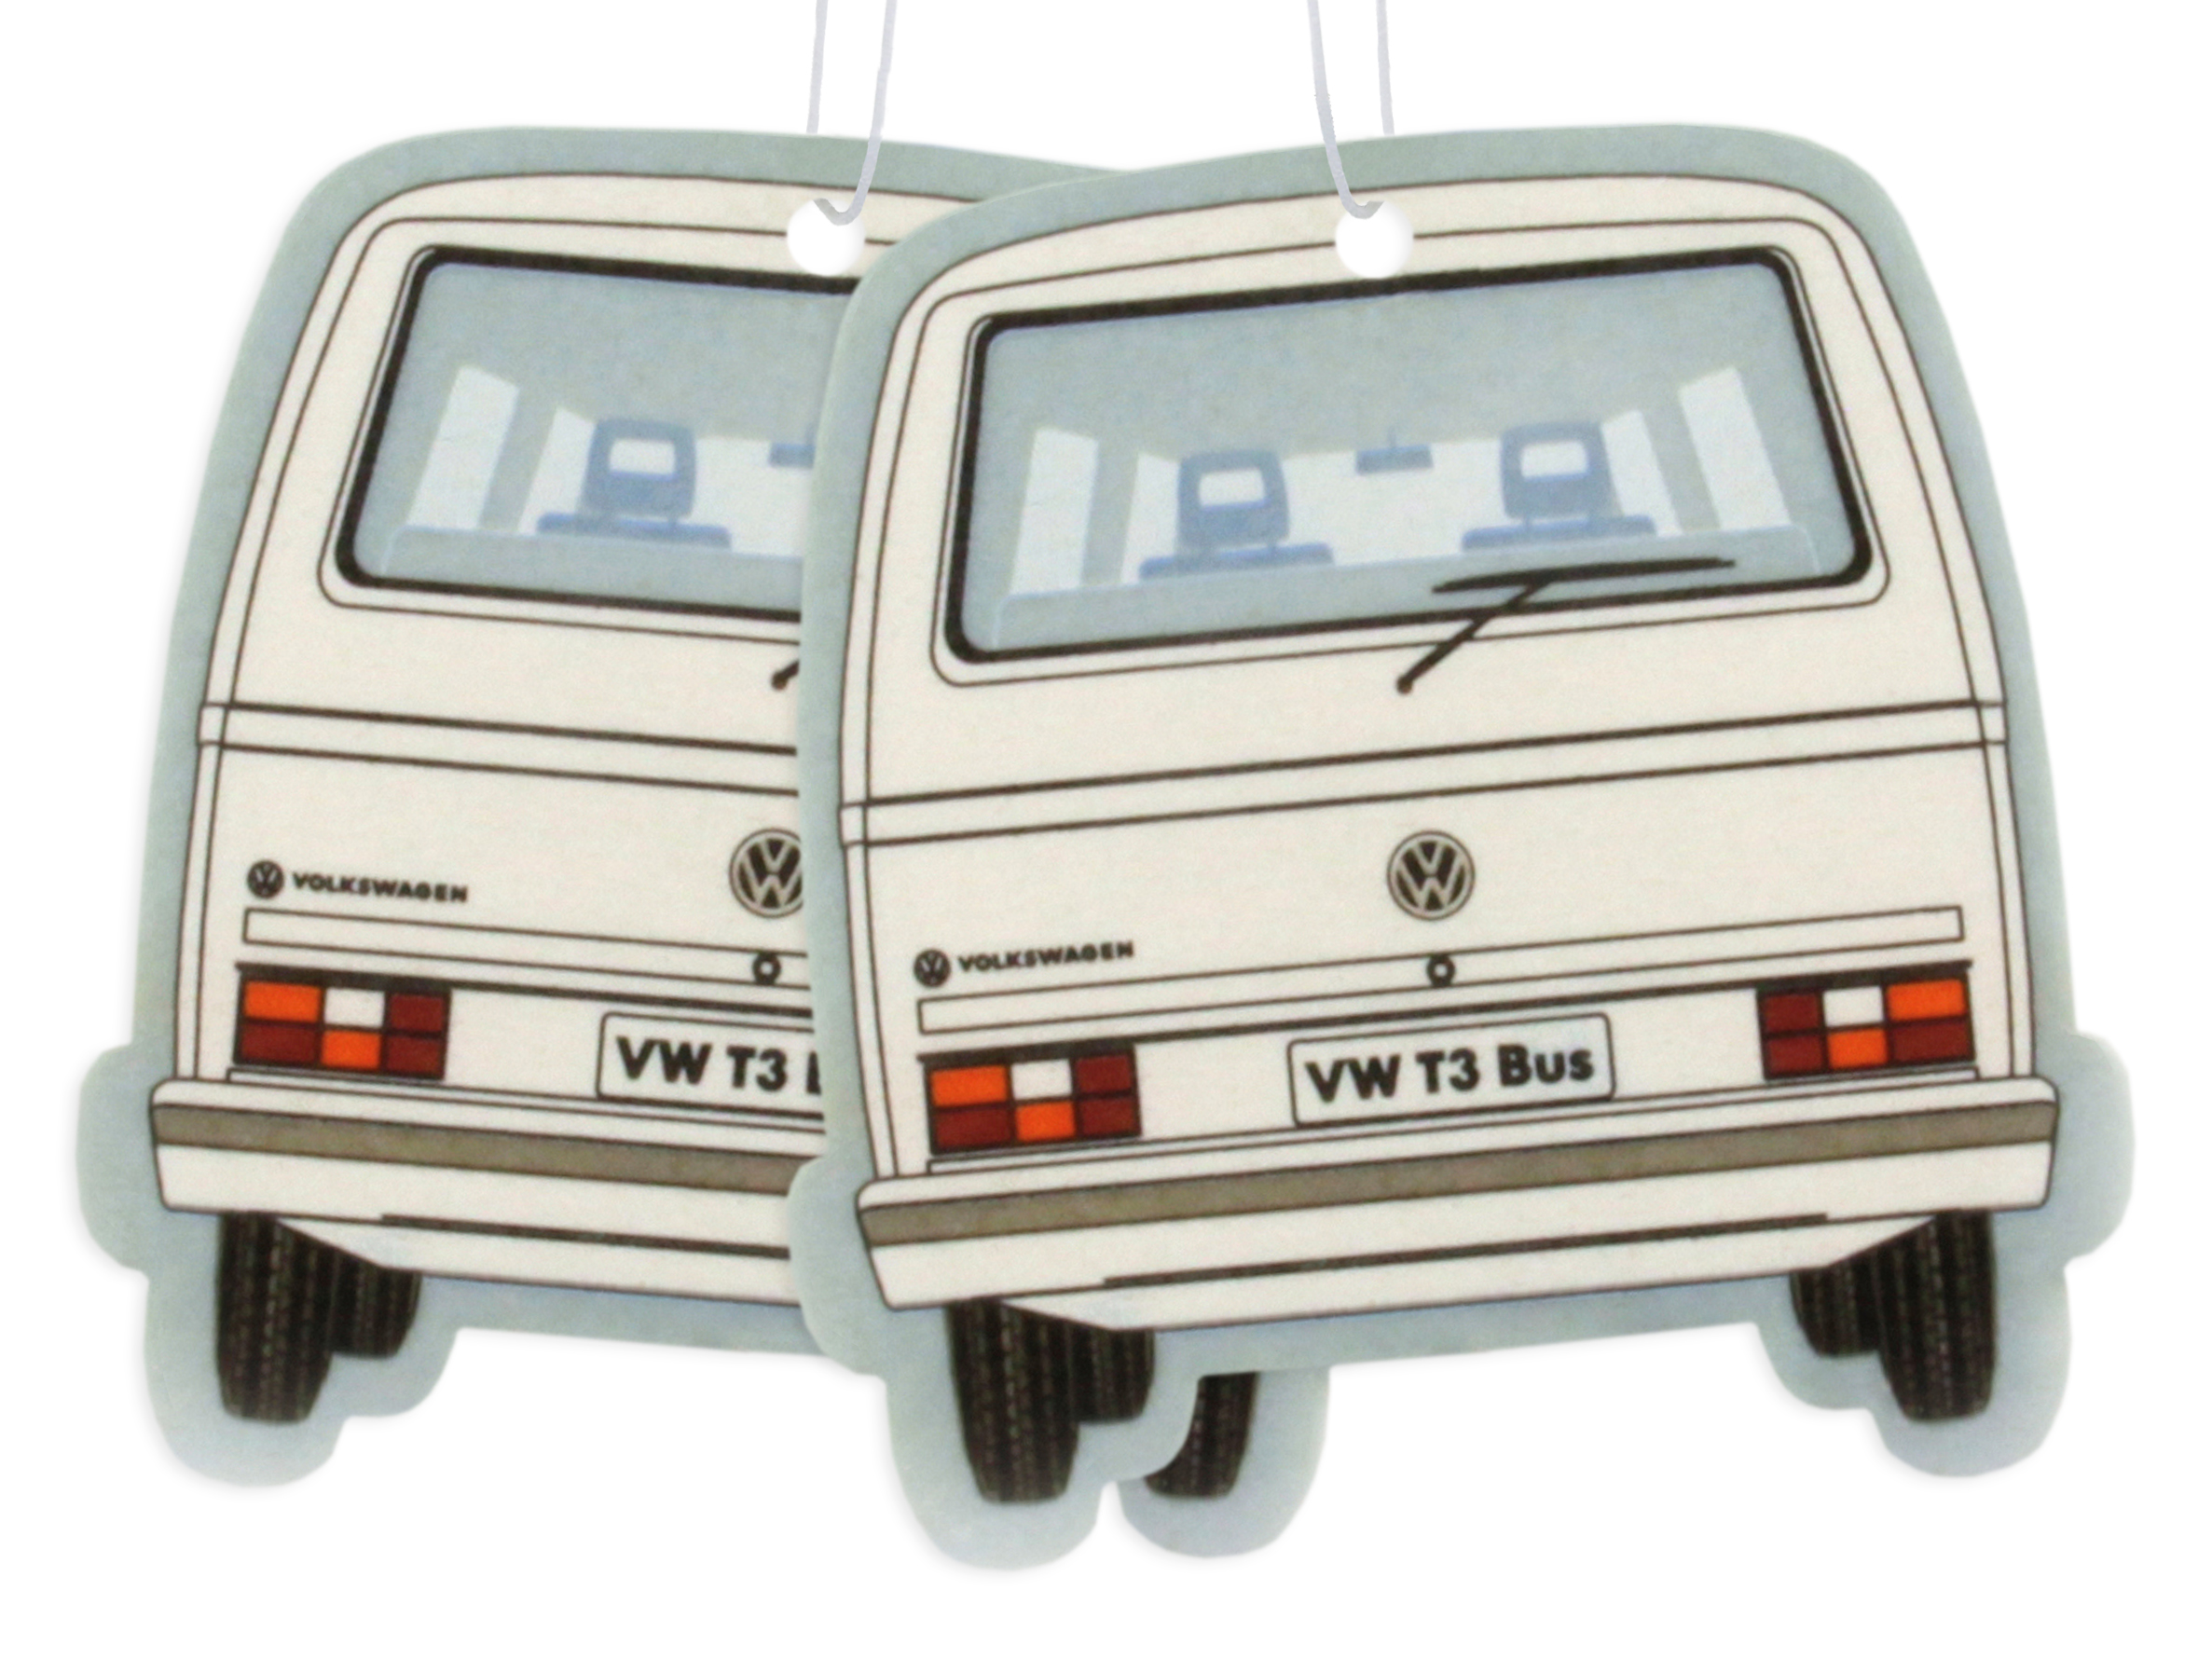 Juego de 2 ambientadores Volkswagen - varios diseños